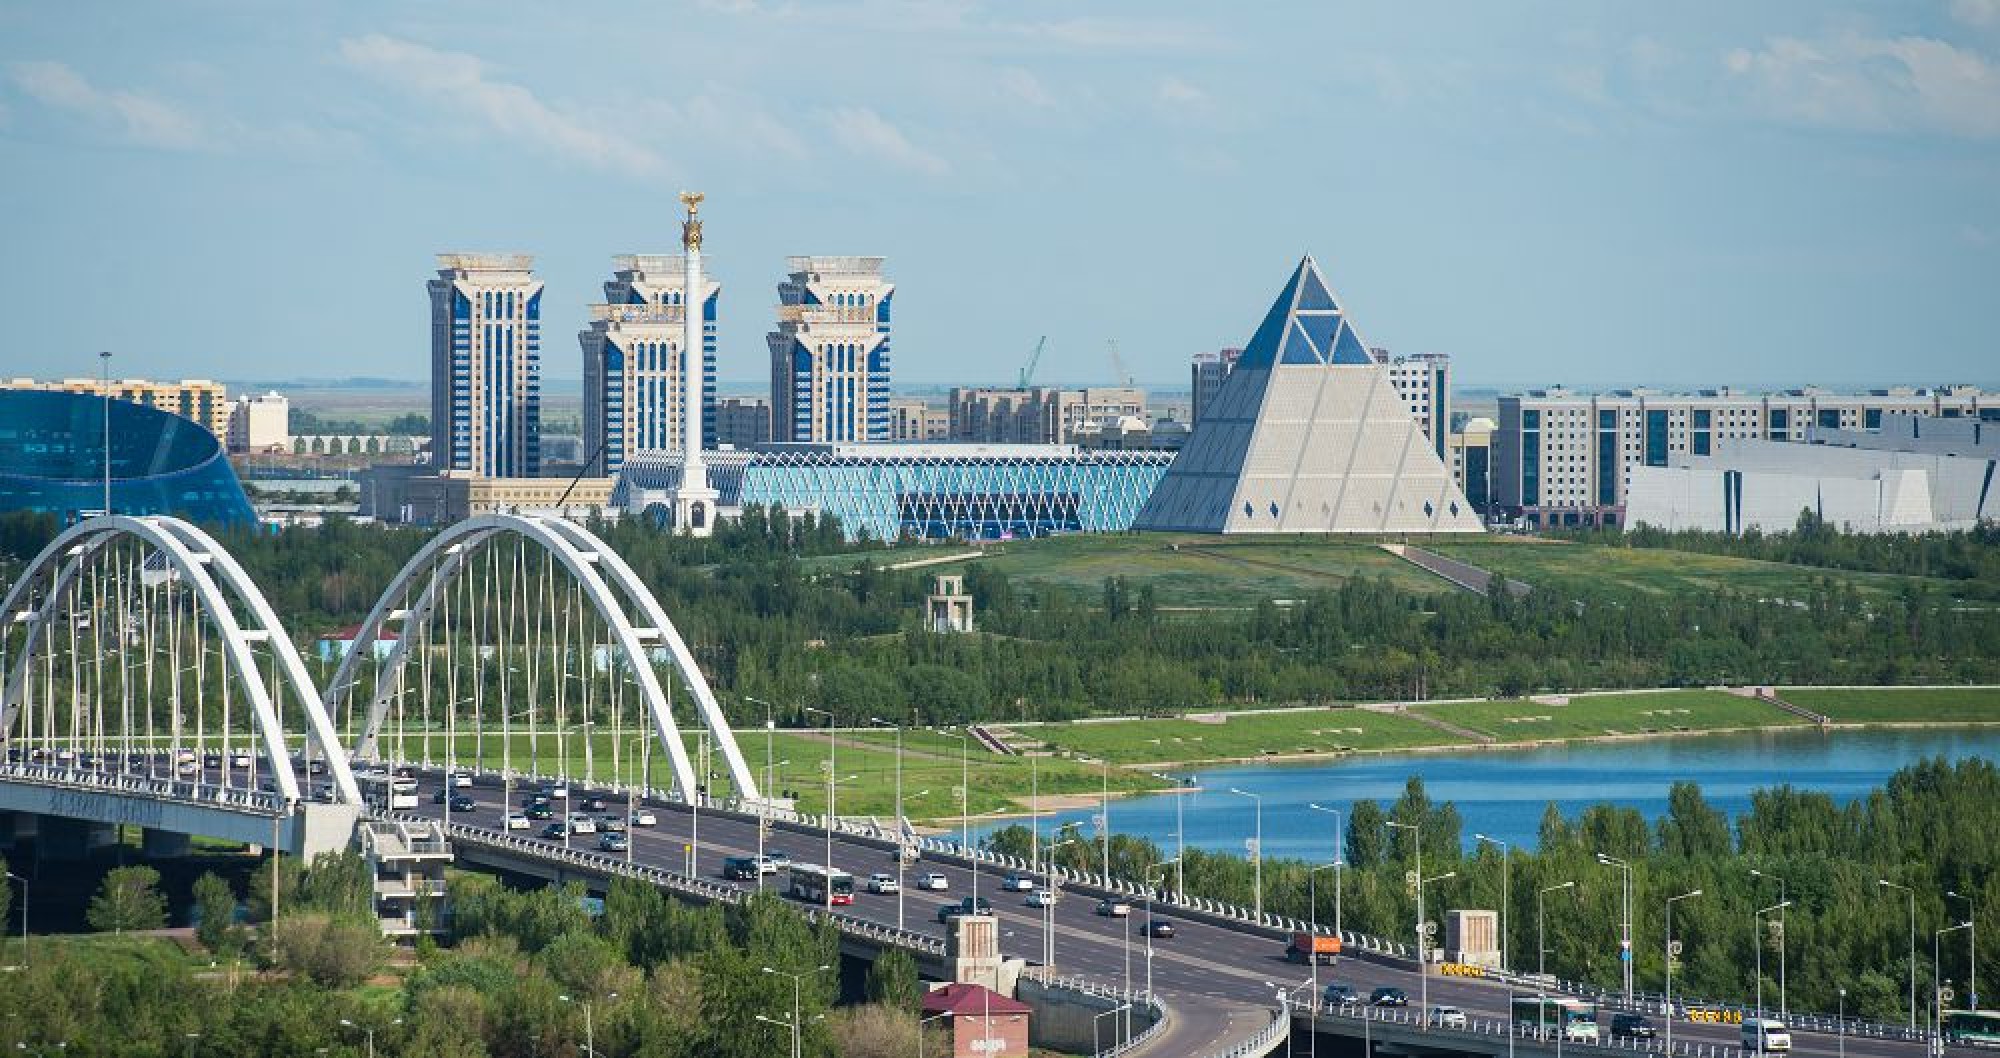 My idea is the new capital itself – Kazakh President